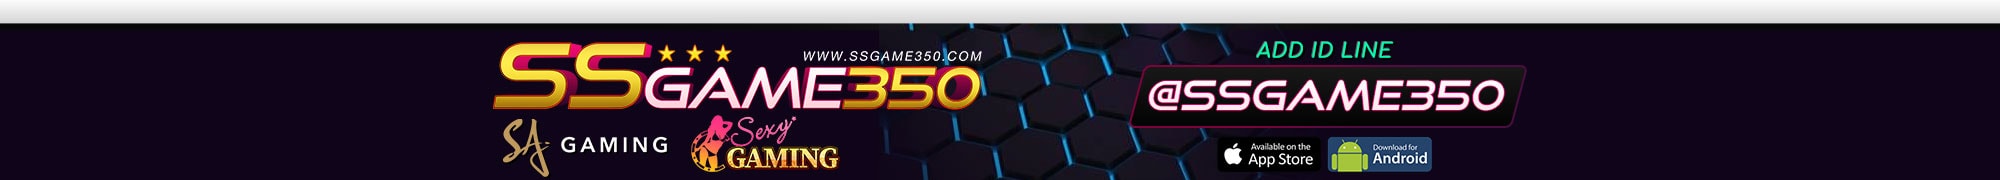 เว็บคาสิโนออนไลน์ SSGAME350 เว็บตรงรวมคาสิโนทุกค่าย ดีที่สุด